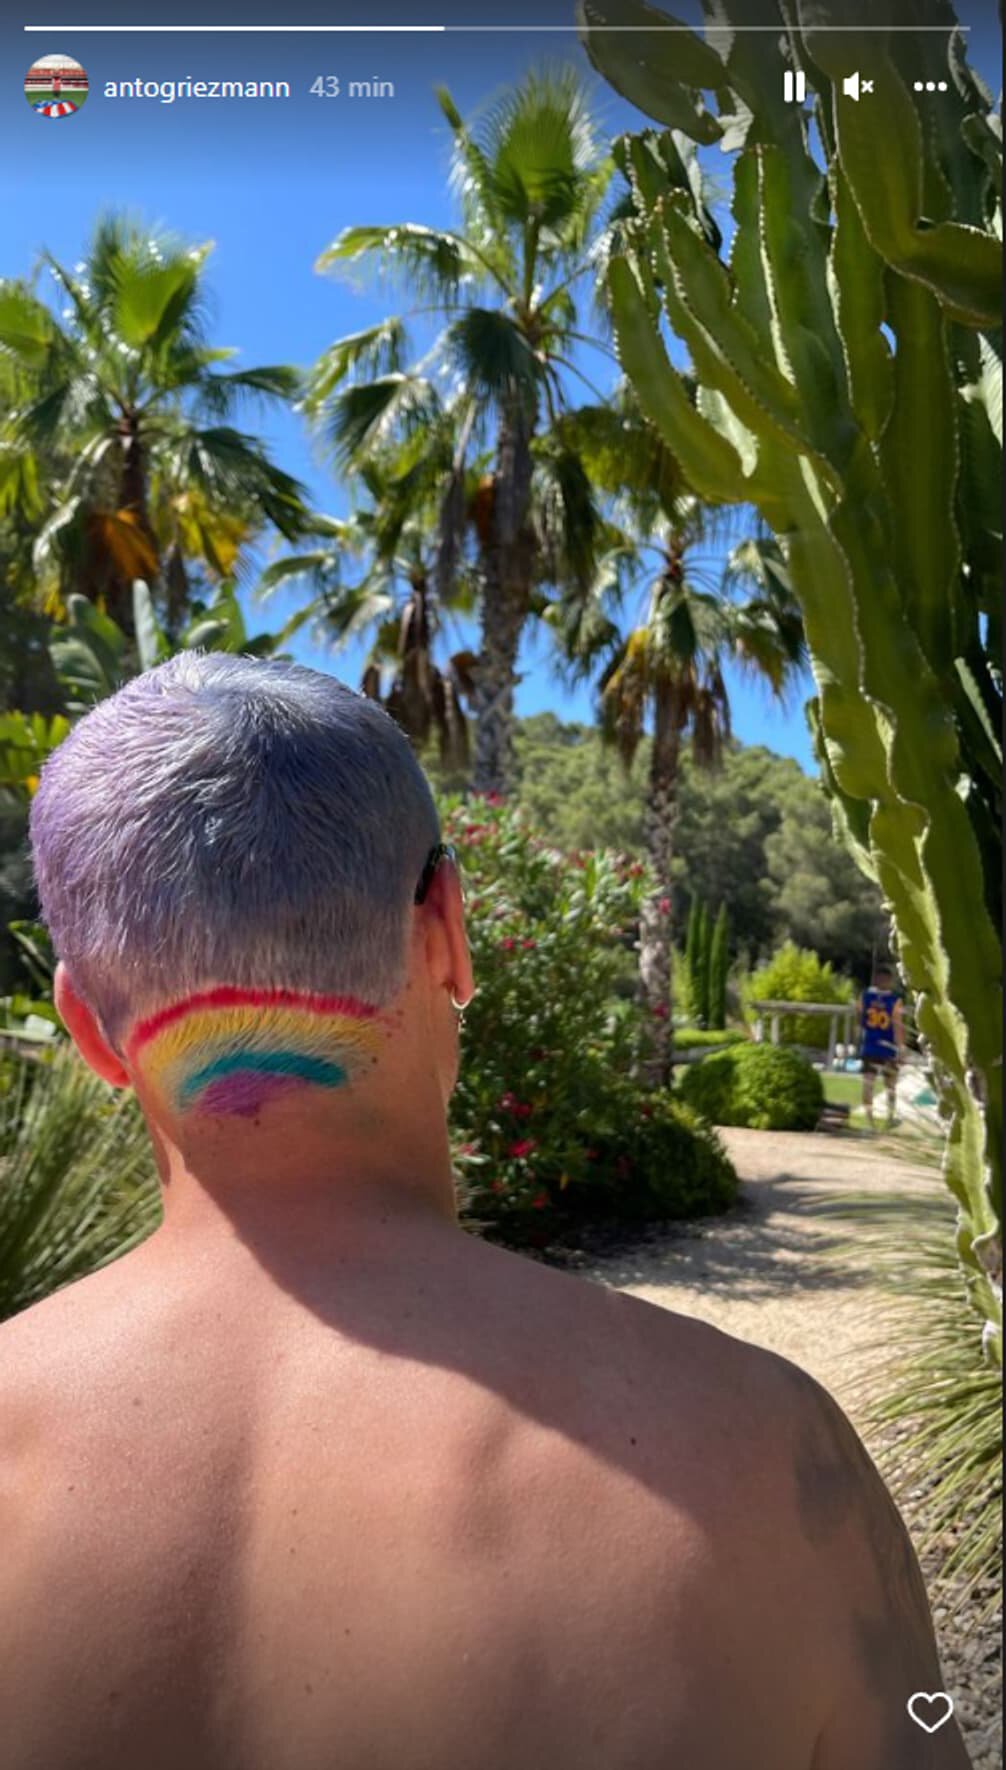 Гризманн покрасил затылок в радужные цвета. В июне проходит ЛГБТ-прайд -  Футбол - Sports.ru